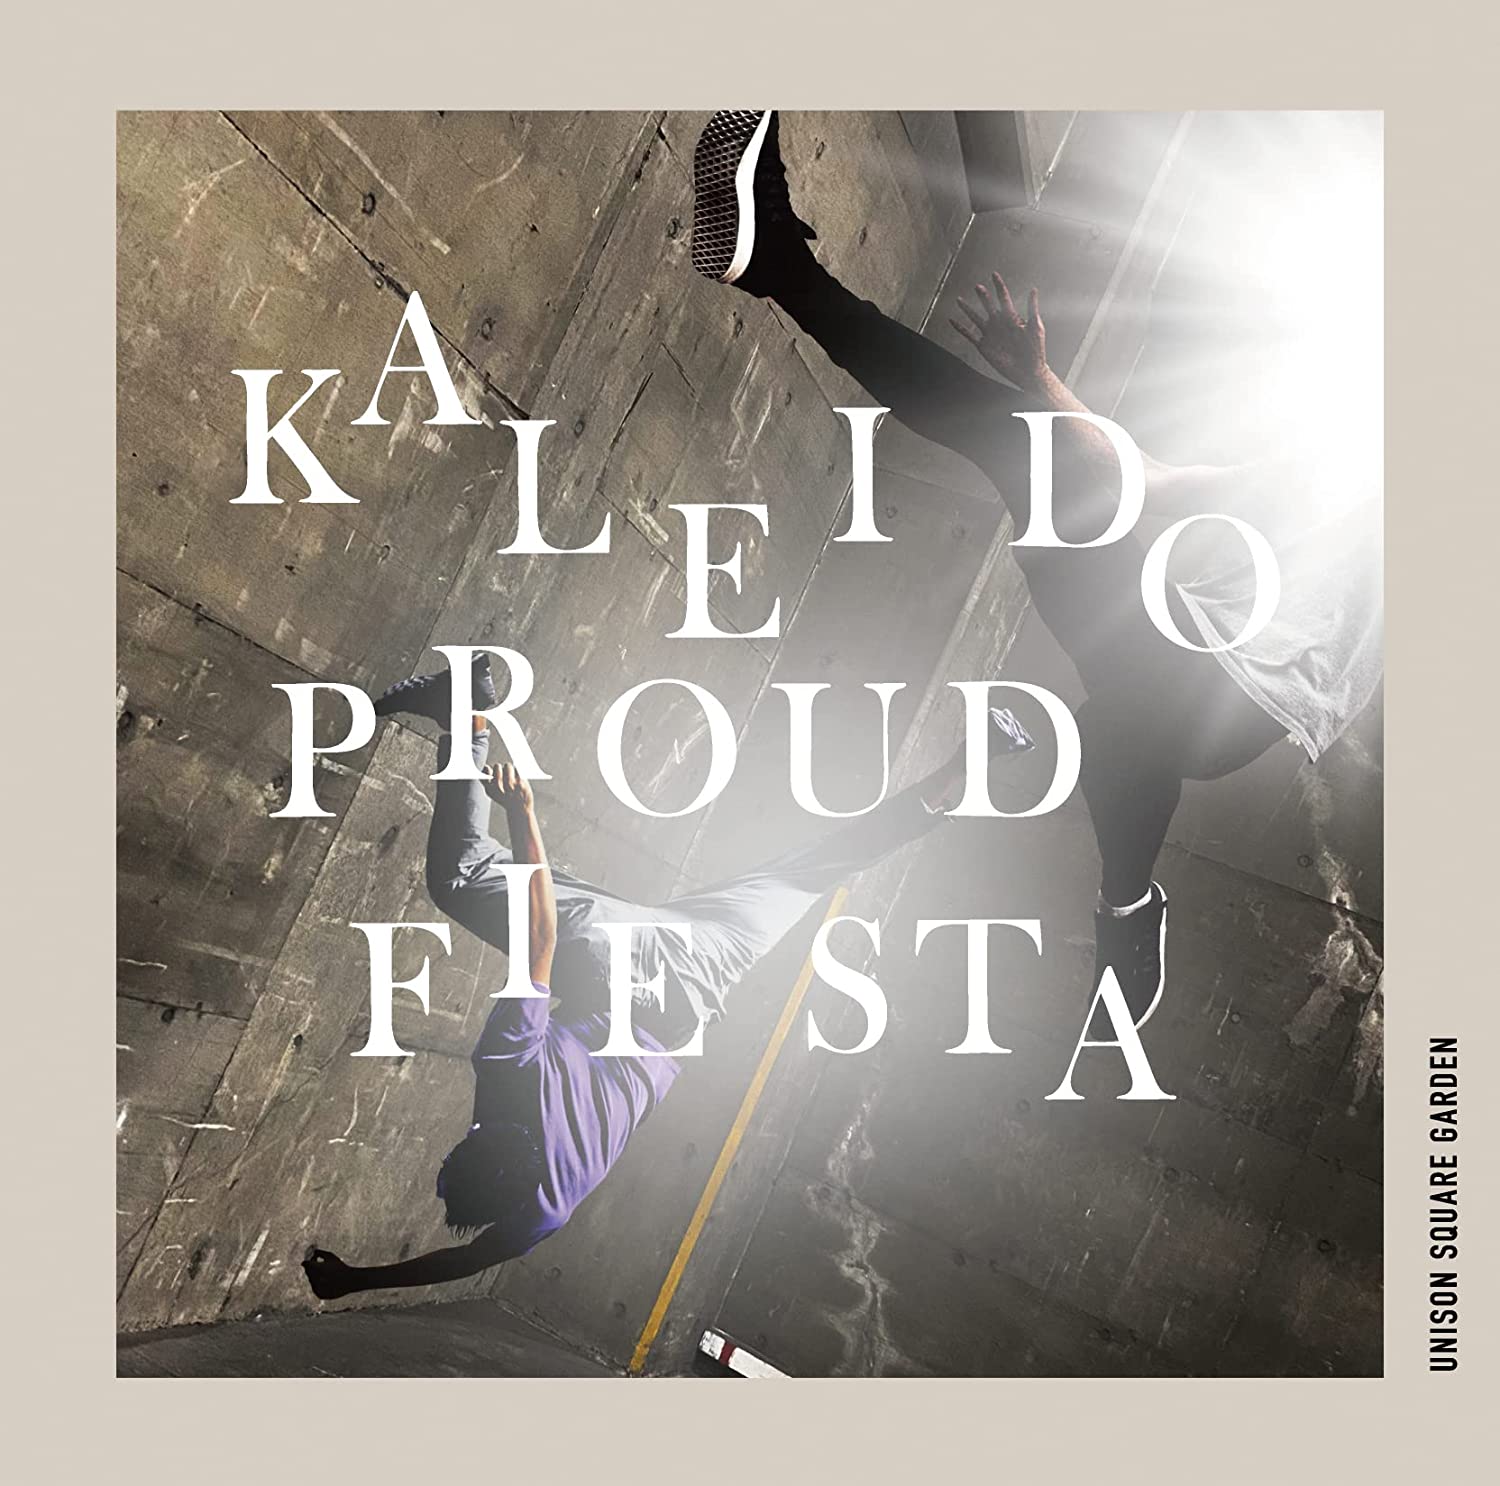 kaleido proud fiesta | Jpop Wiki | Fandom